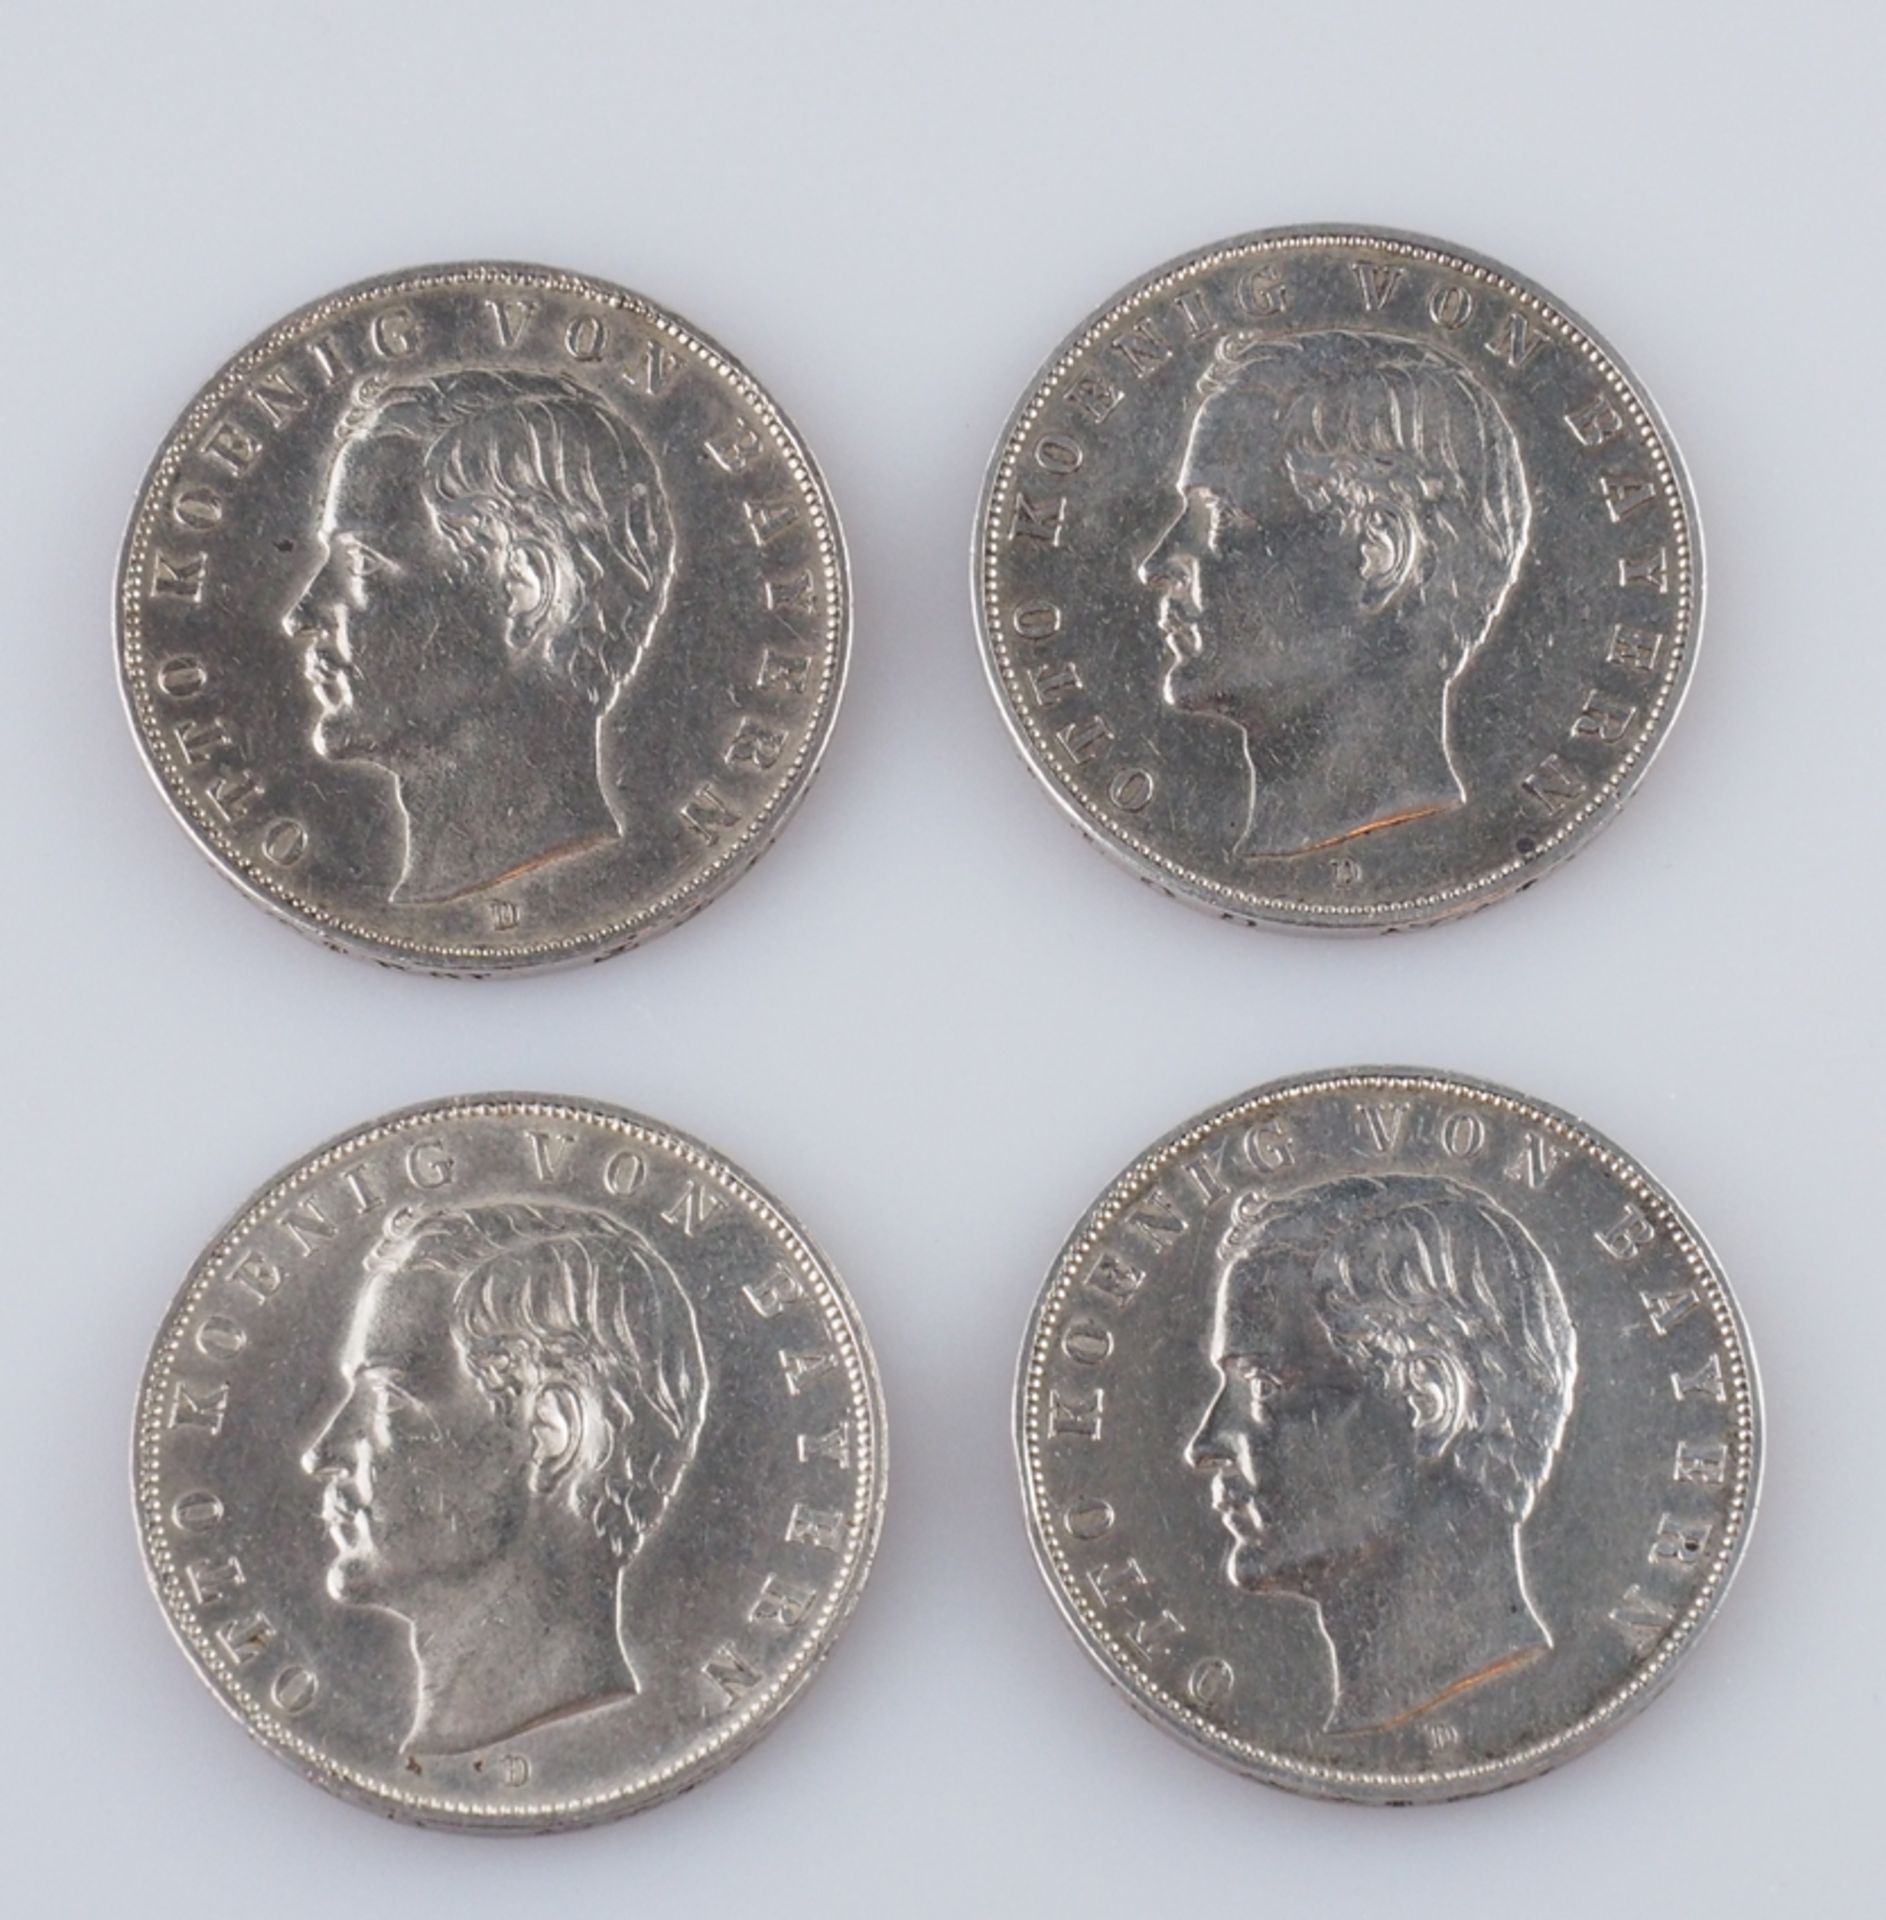 Bayern. Drei Mark. Vier Münzen. Ein Stück 1909, zwei Stück 1910, ein Stück 1912. J 47